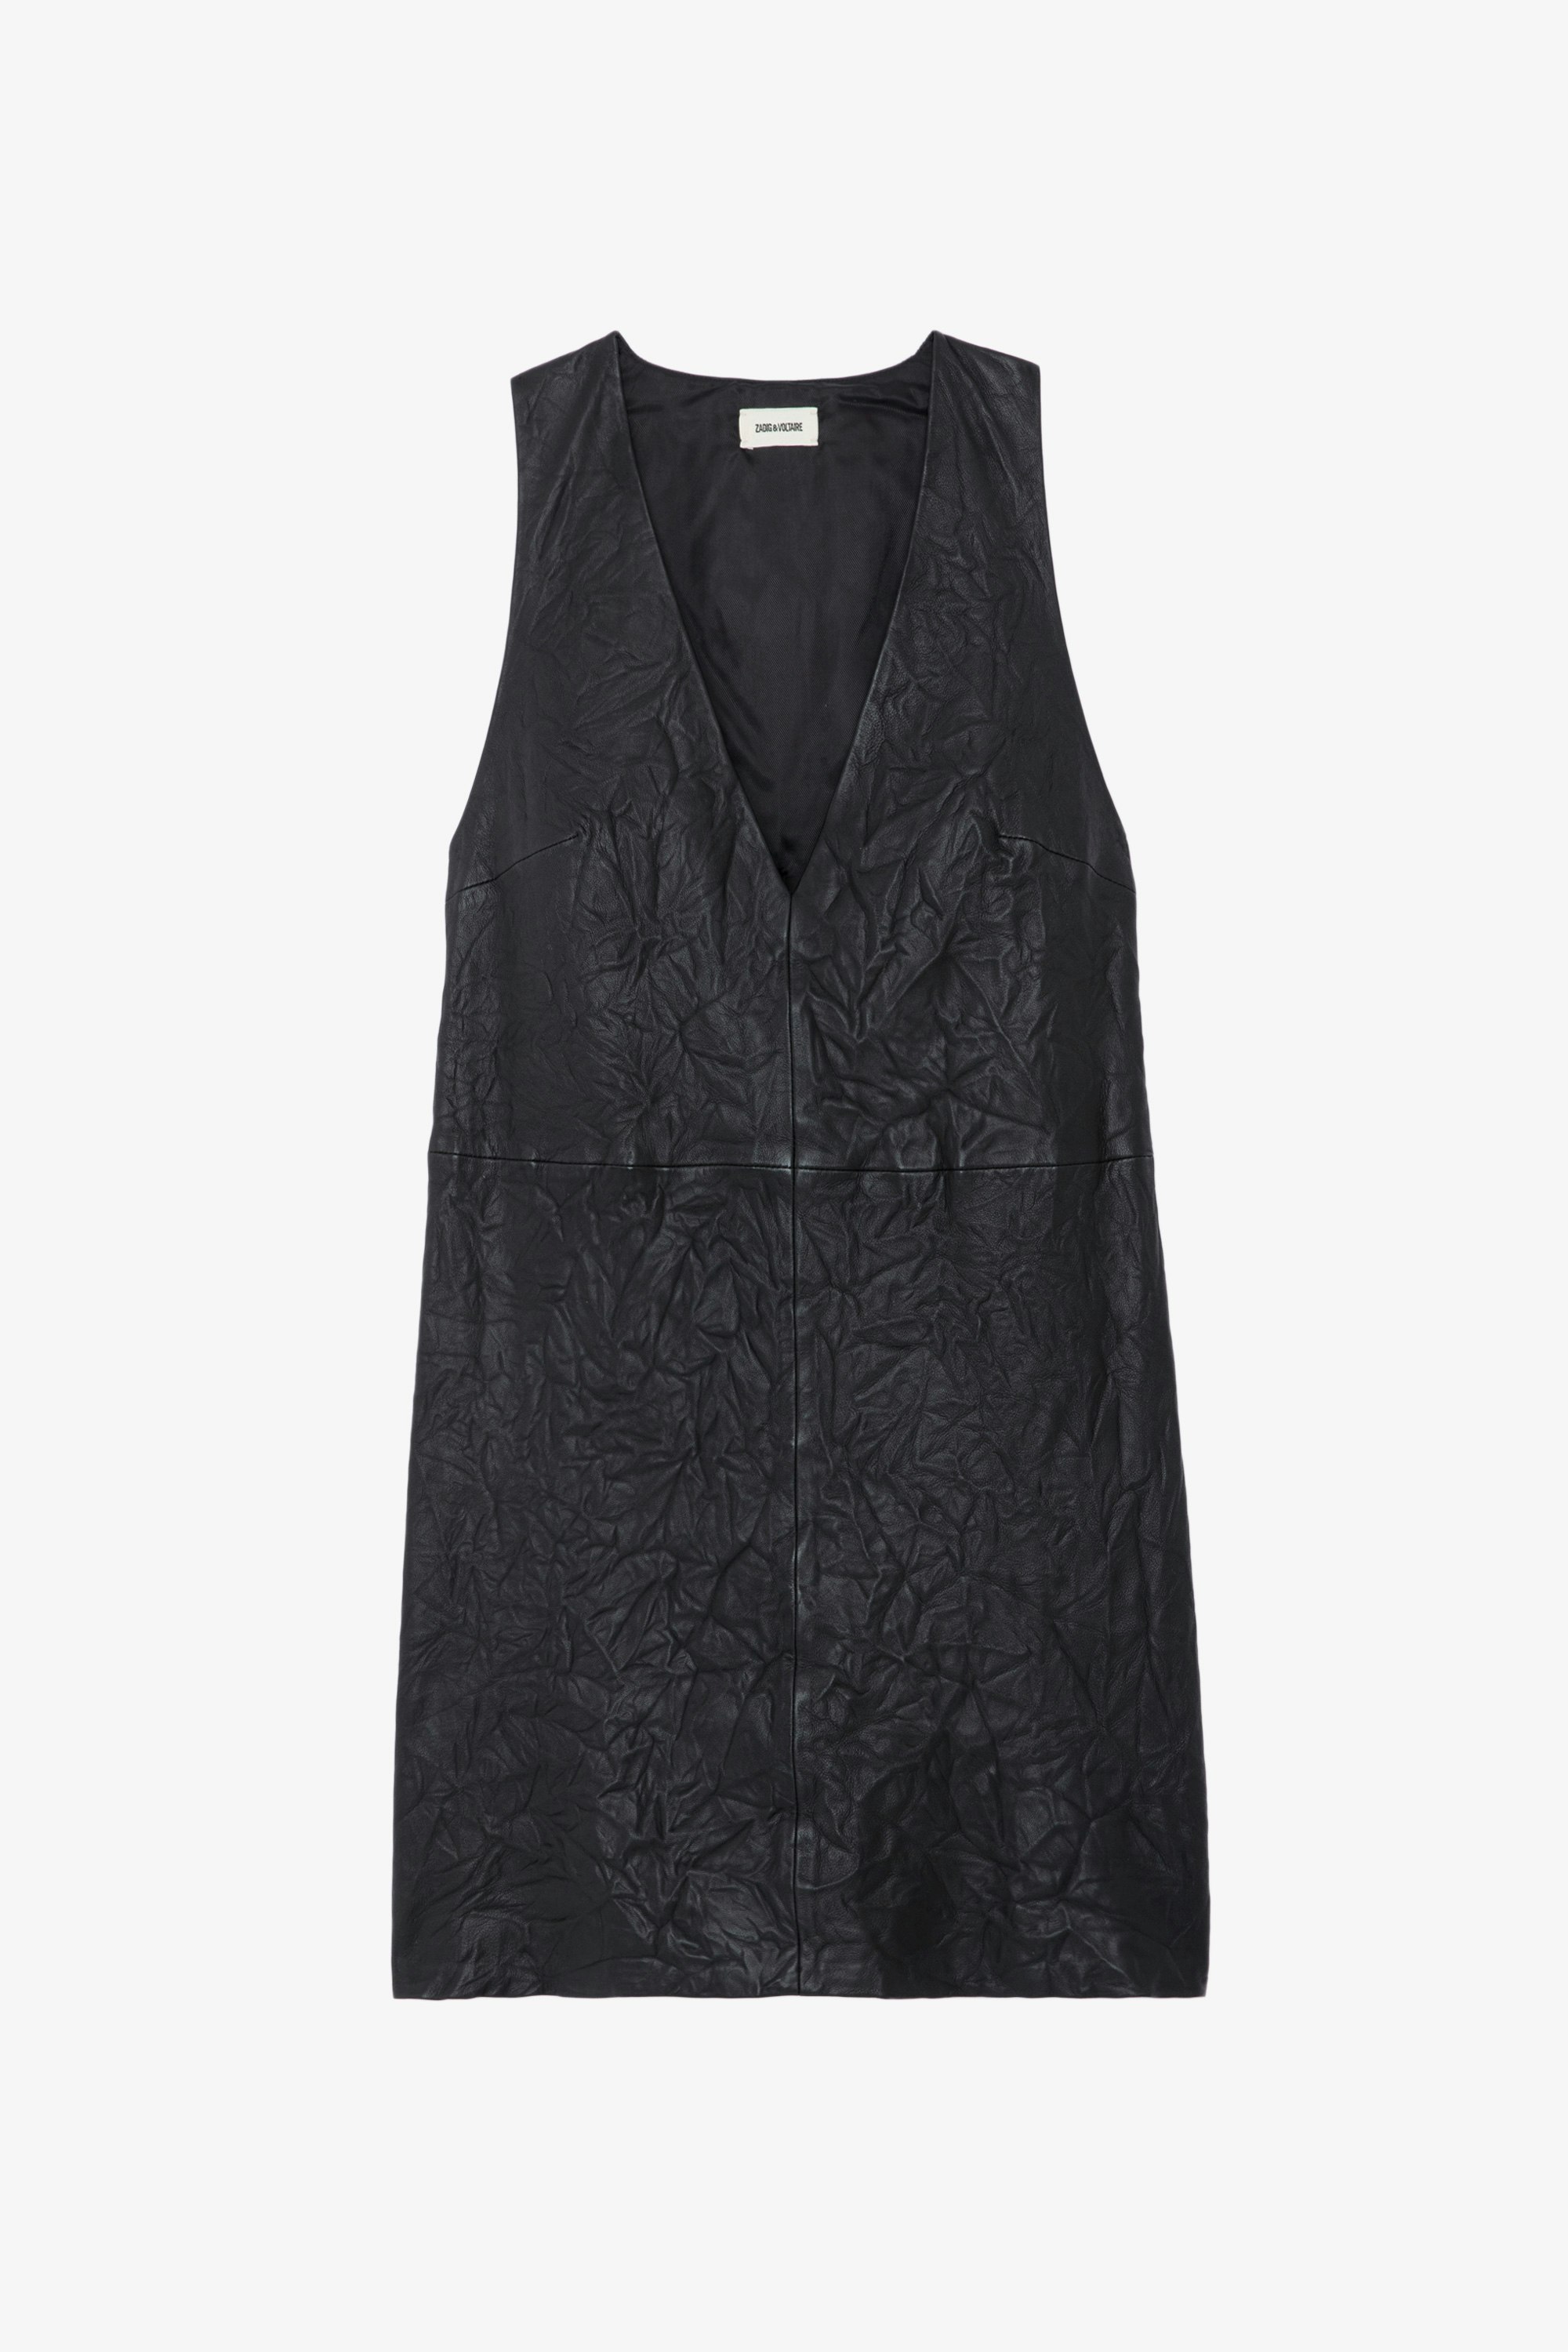 Kleid Rasha Knitterleder - Kurzes, ärmelloses Kleid aus Knitterleder mit V-Ausschnitt in Schwarz.